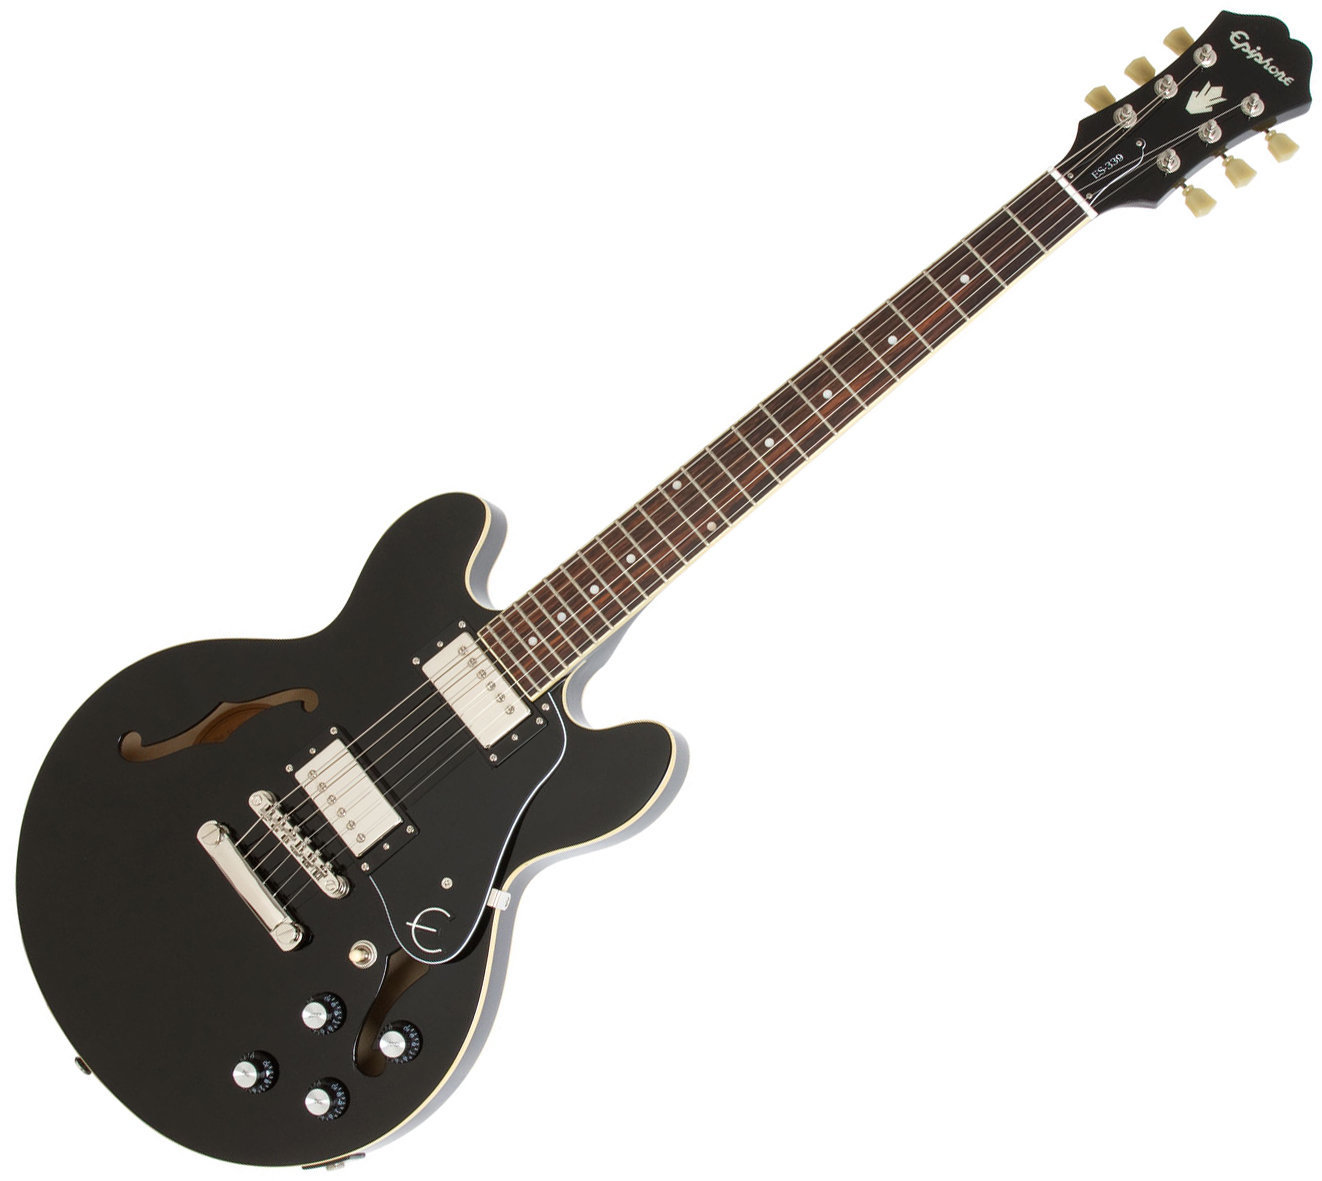 Semiakustická kytara Epiphone ES-339 Pro Ebony Black